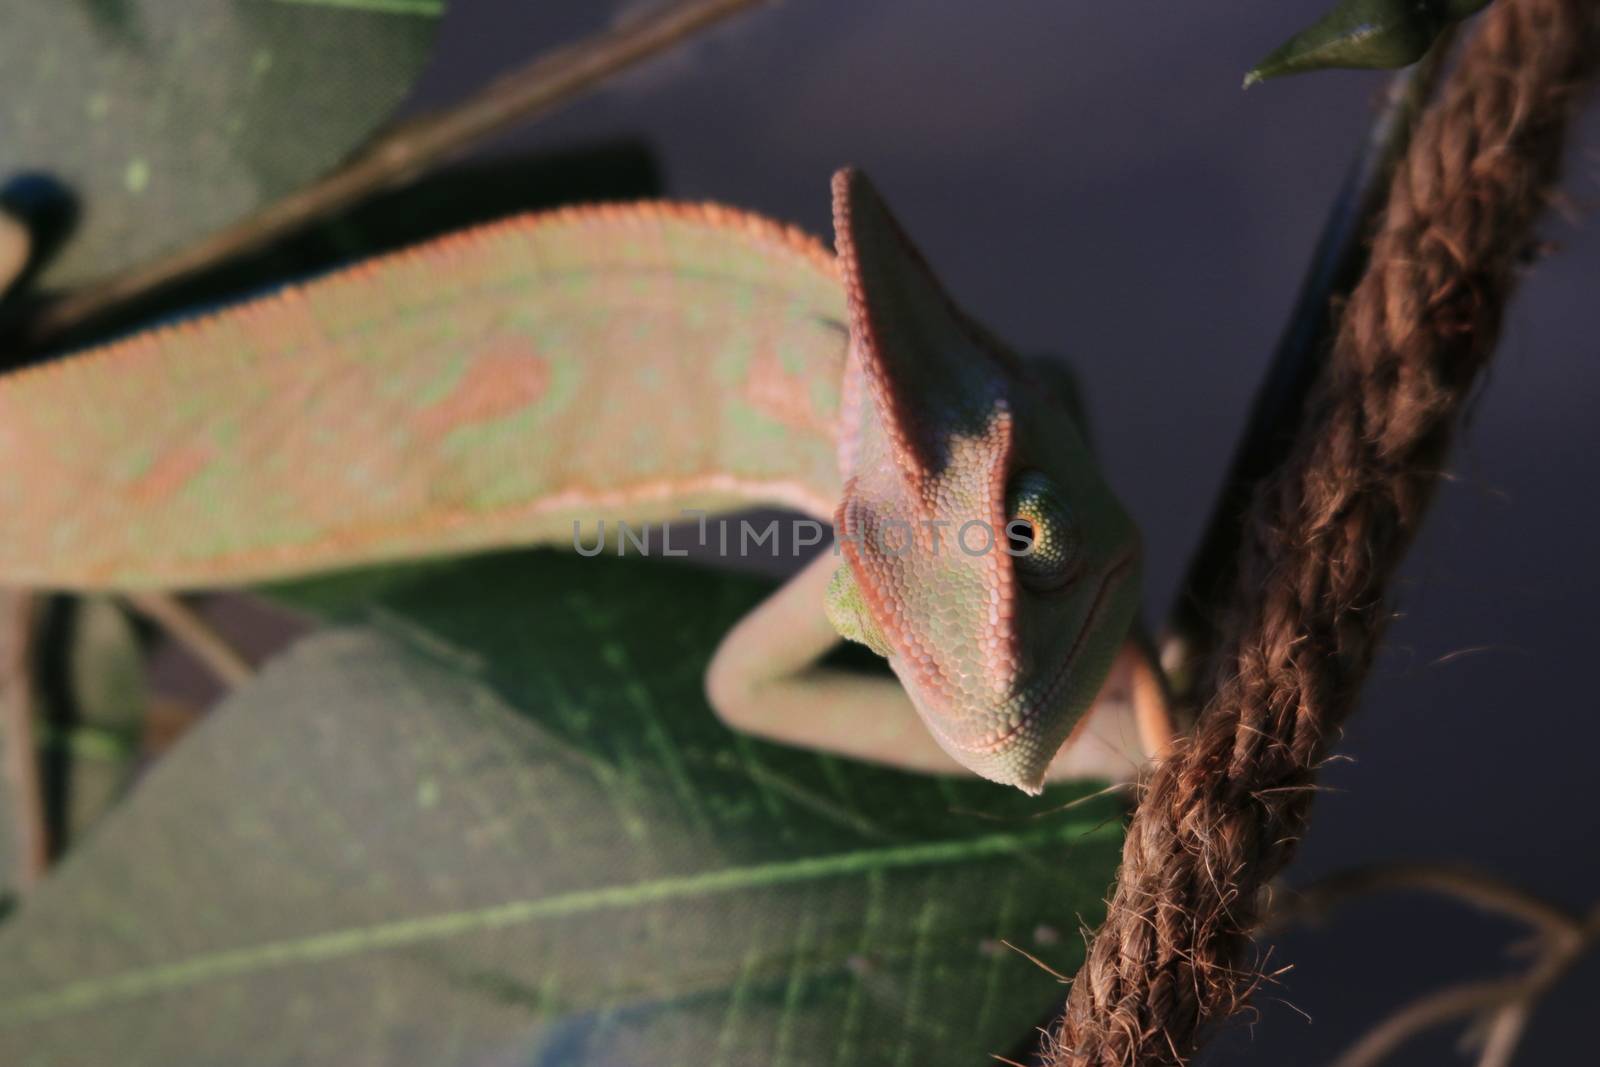 pet veiled chameleon in captivity by mynewturtle1